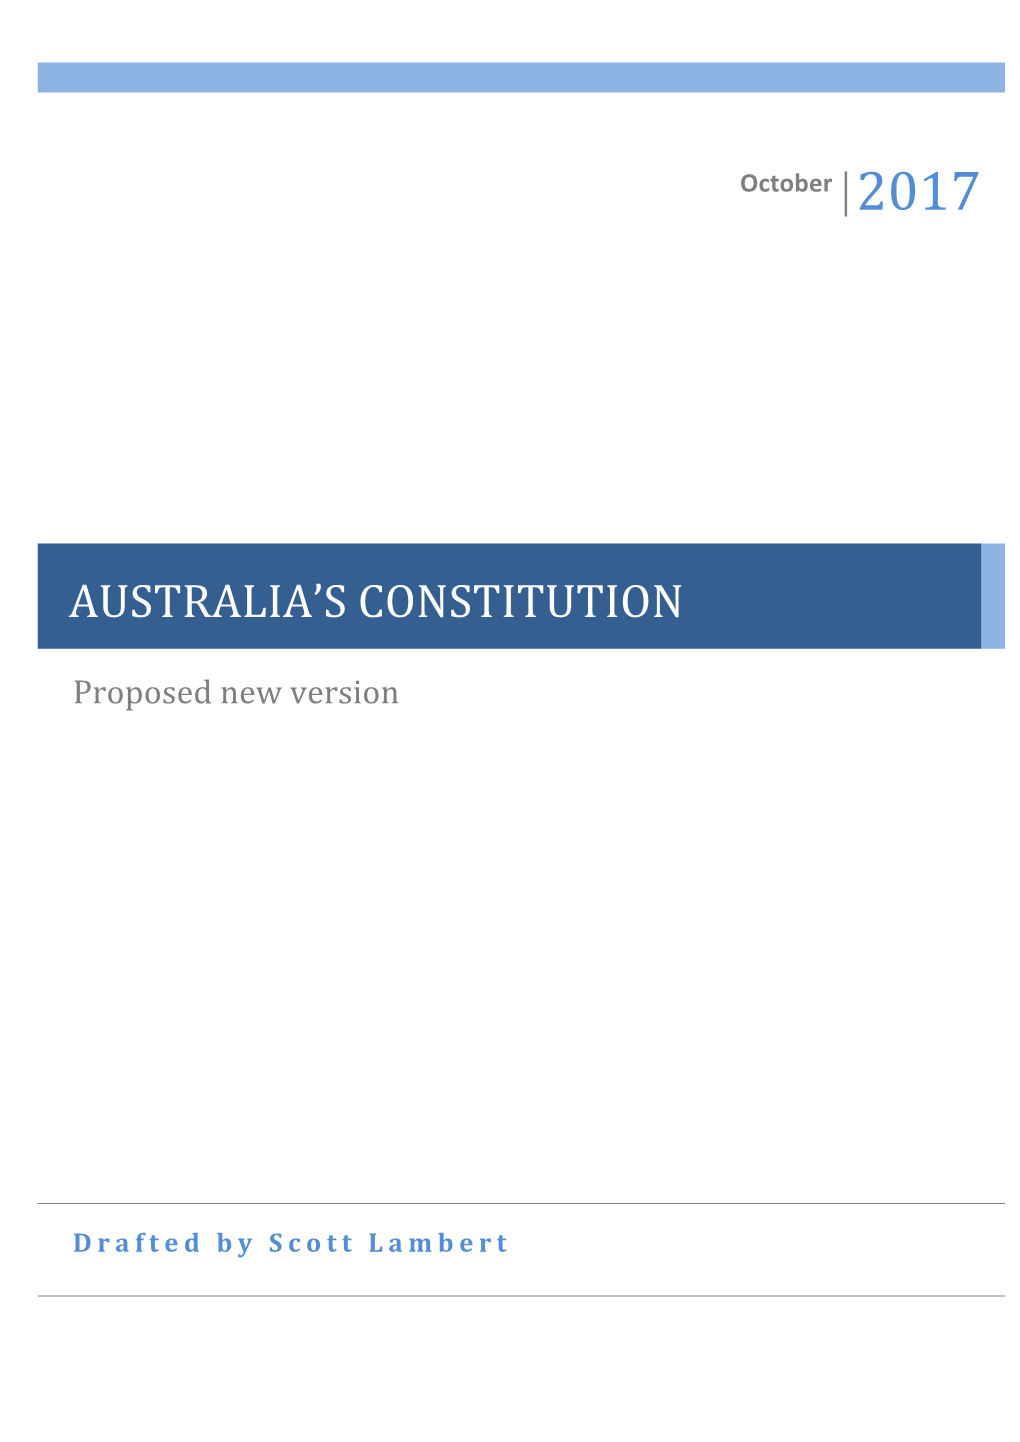 Australia's Constitution